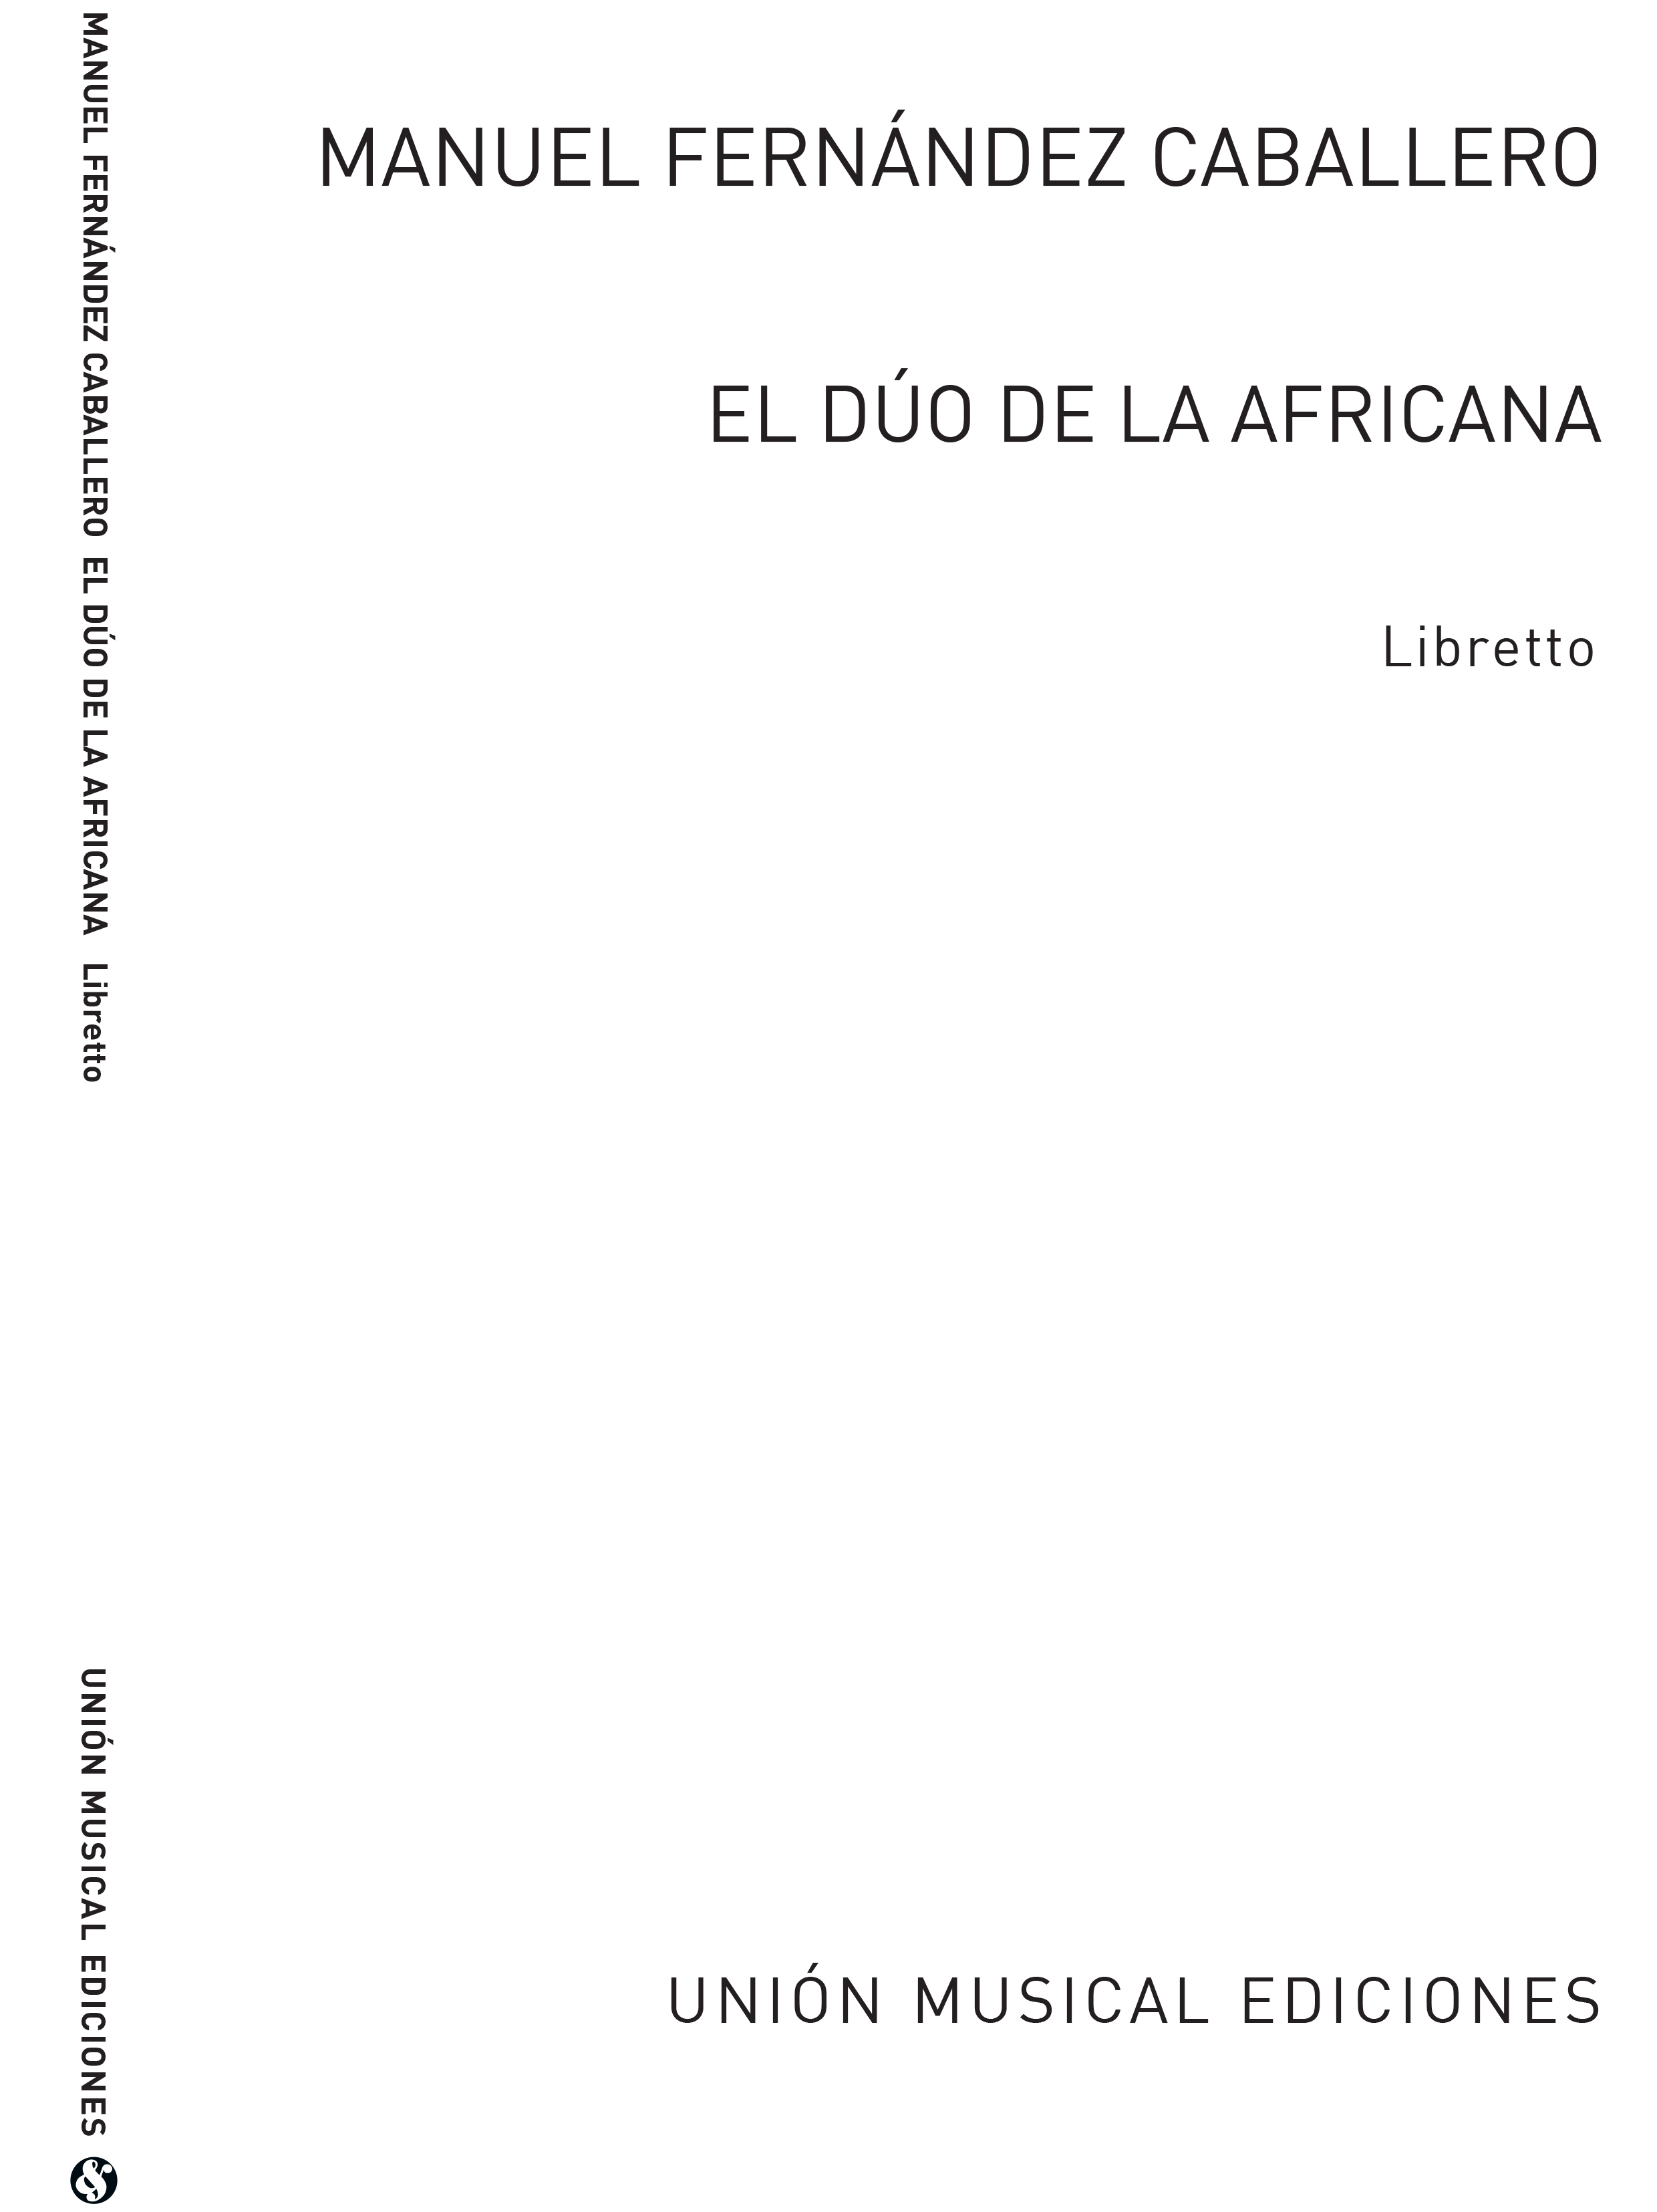 Manuel Fernandez Caballero: El Duo de la Africana (Libretto)